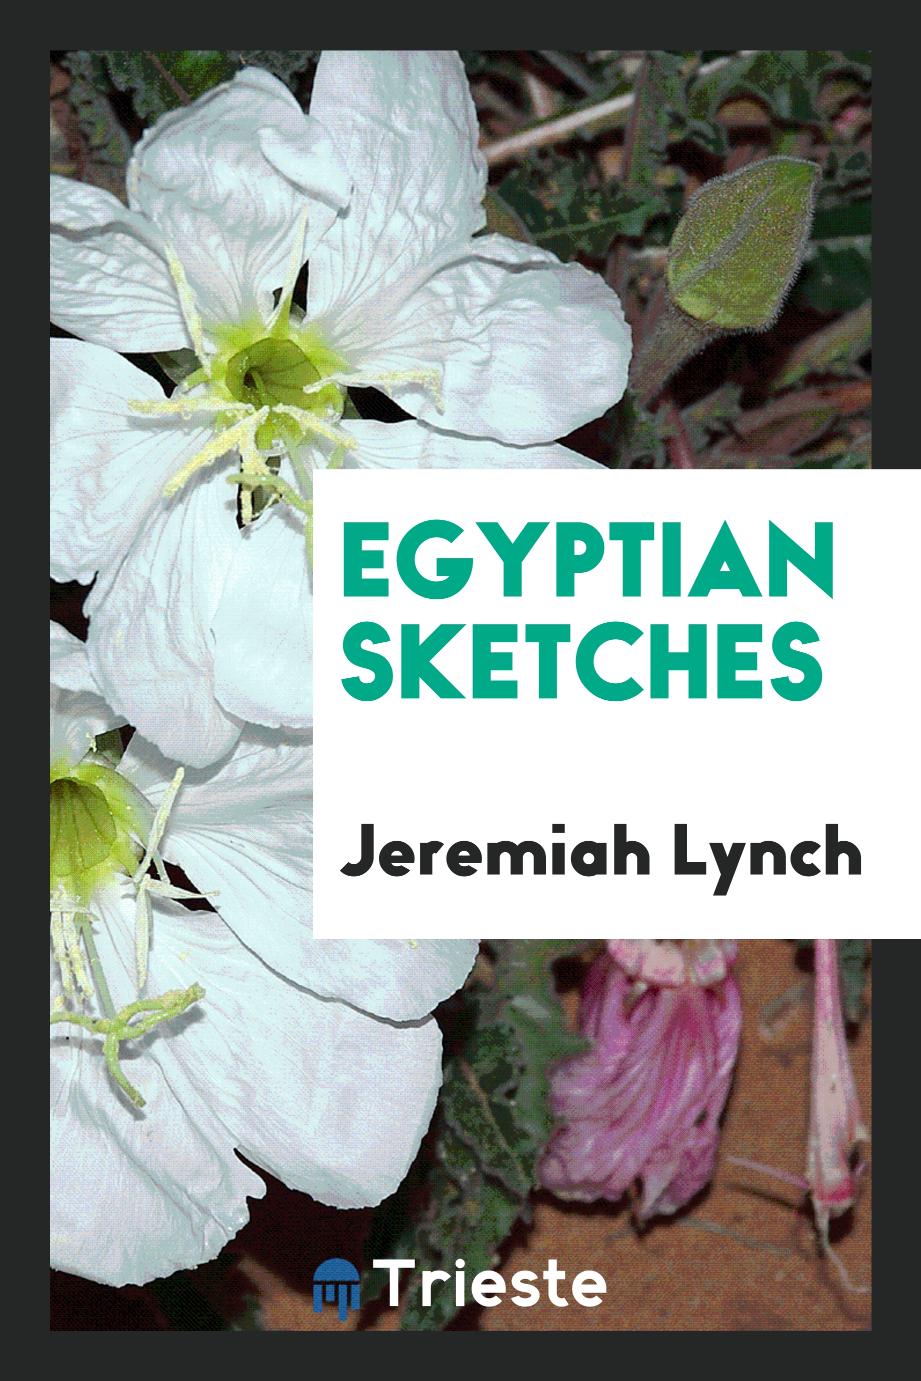 Egyptian sketches